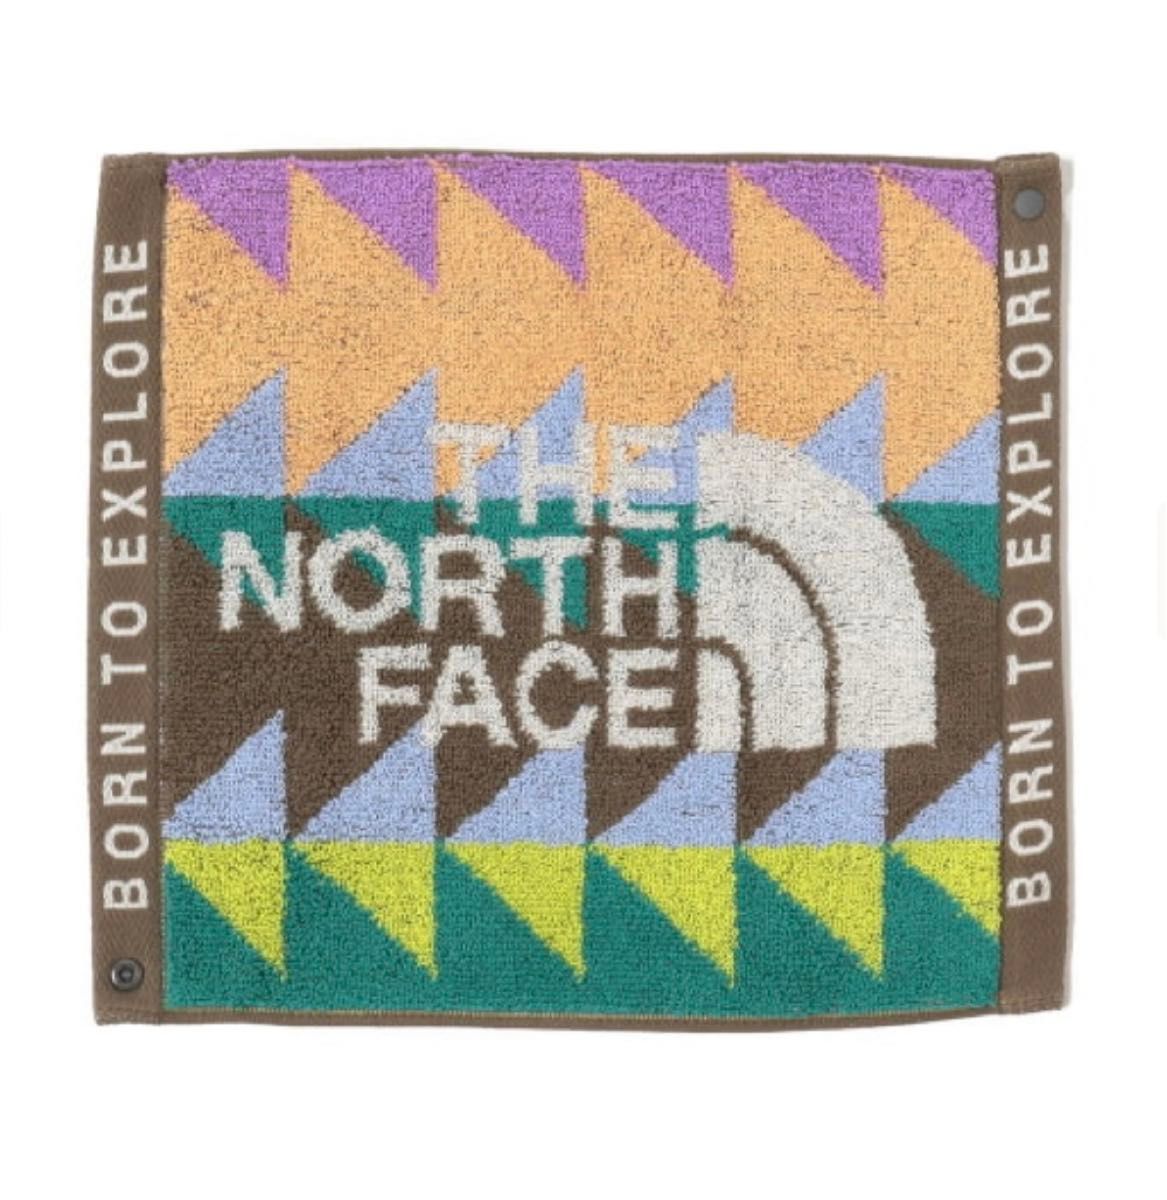  【新品】ザ・ノース・フェイス THE NORTH FACE マウンテンレインボータオルS  ベビー【NNB22220】カラーGP